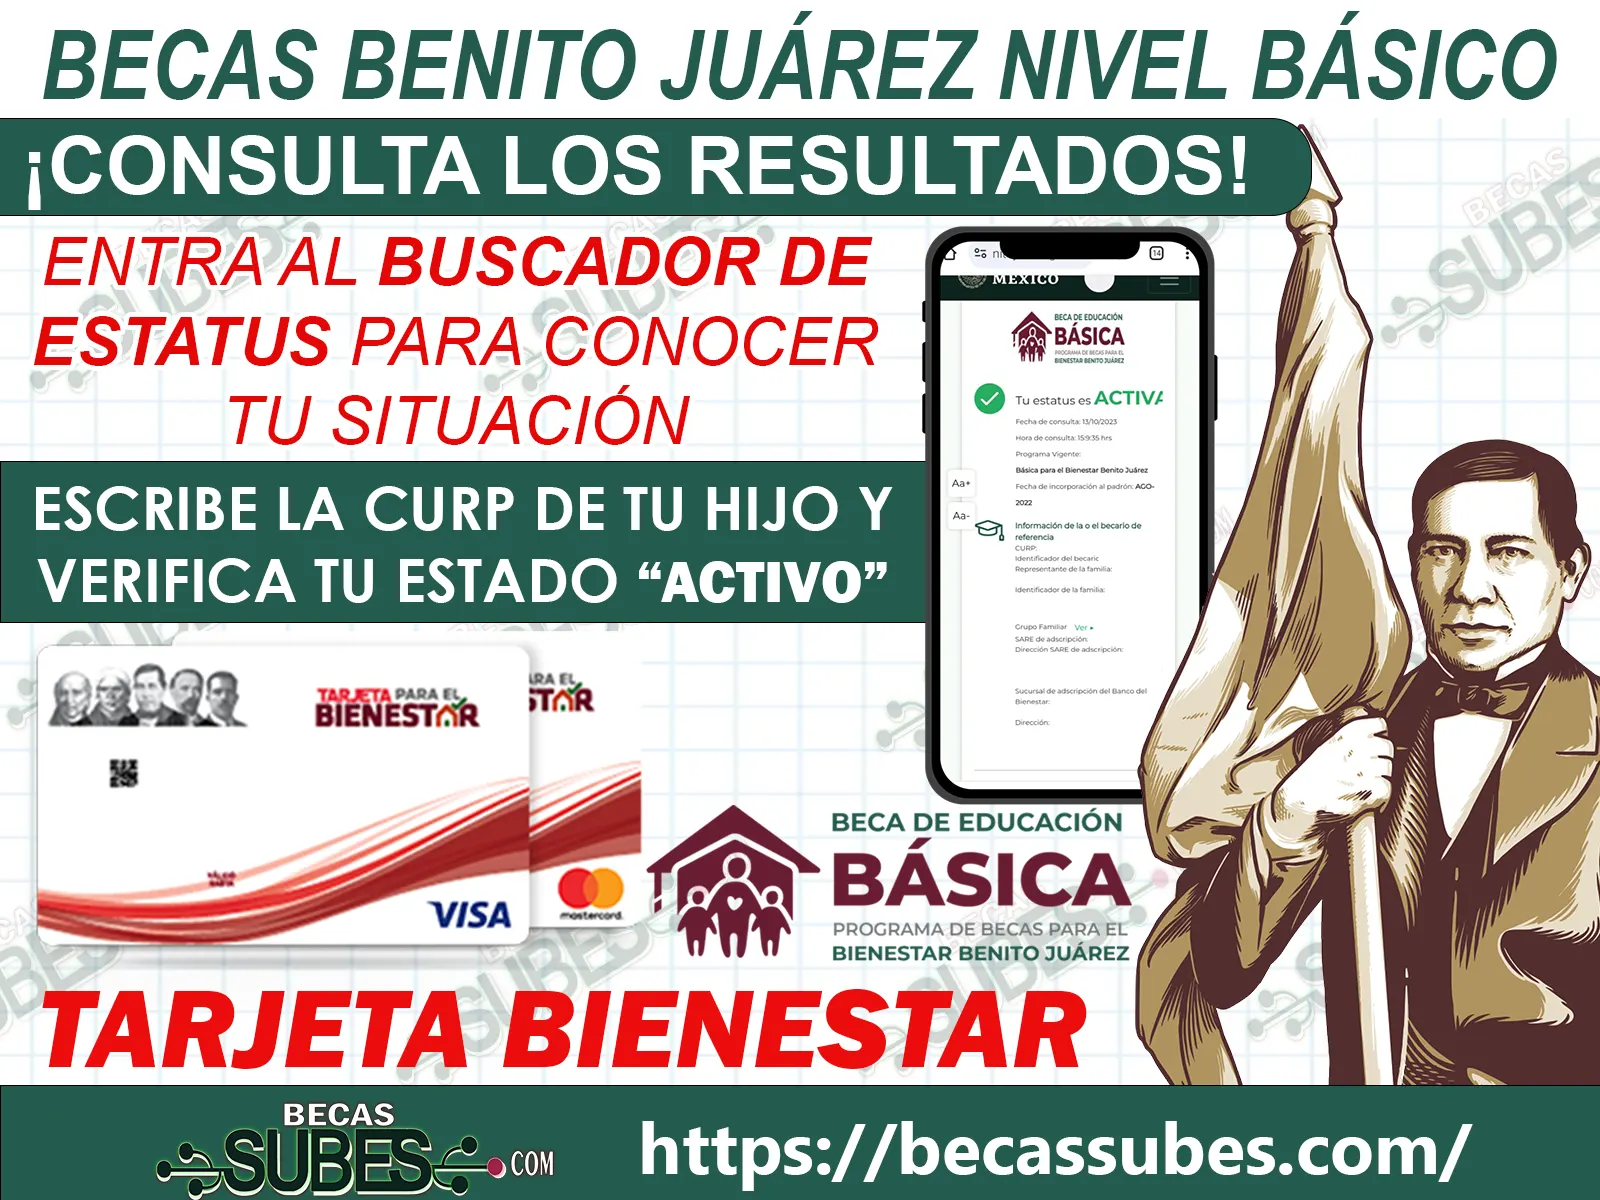 ¡¡Excelentes Noticias!! Si te aplicaron la Cédula Única ¡Ya puedes consultar los Resultados! Becas Benito Juárez Nivel Básico